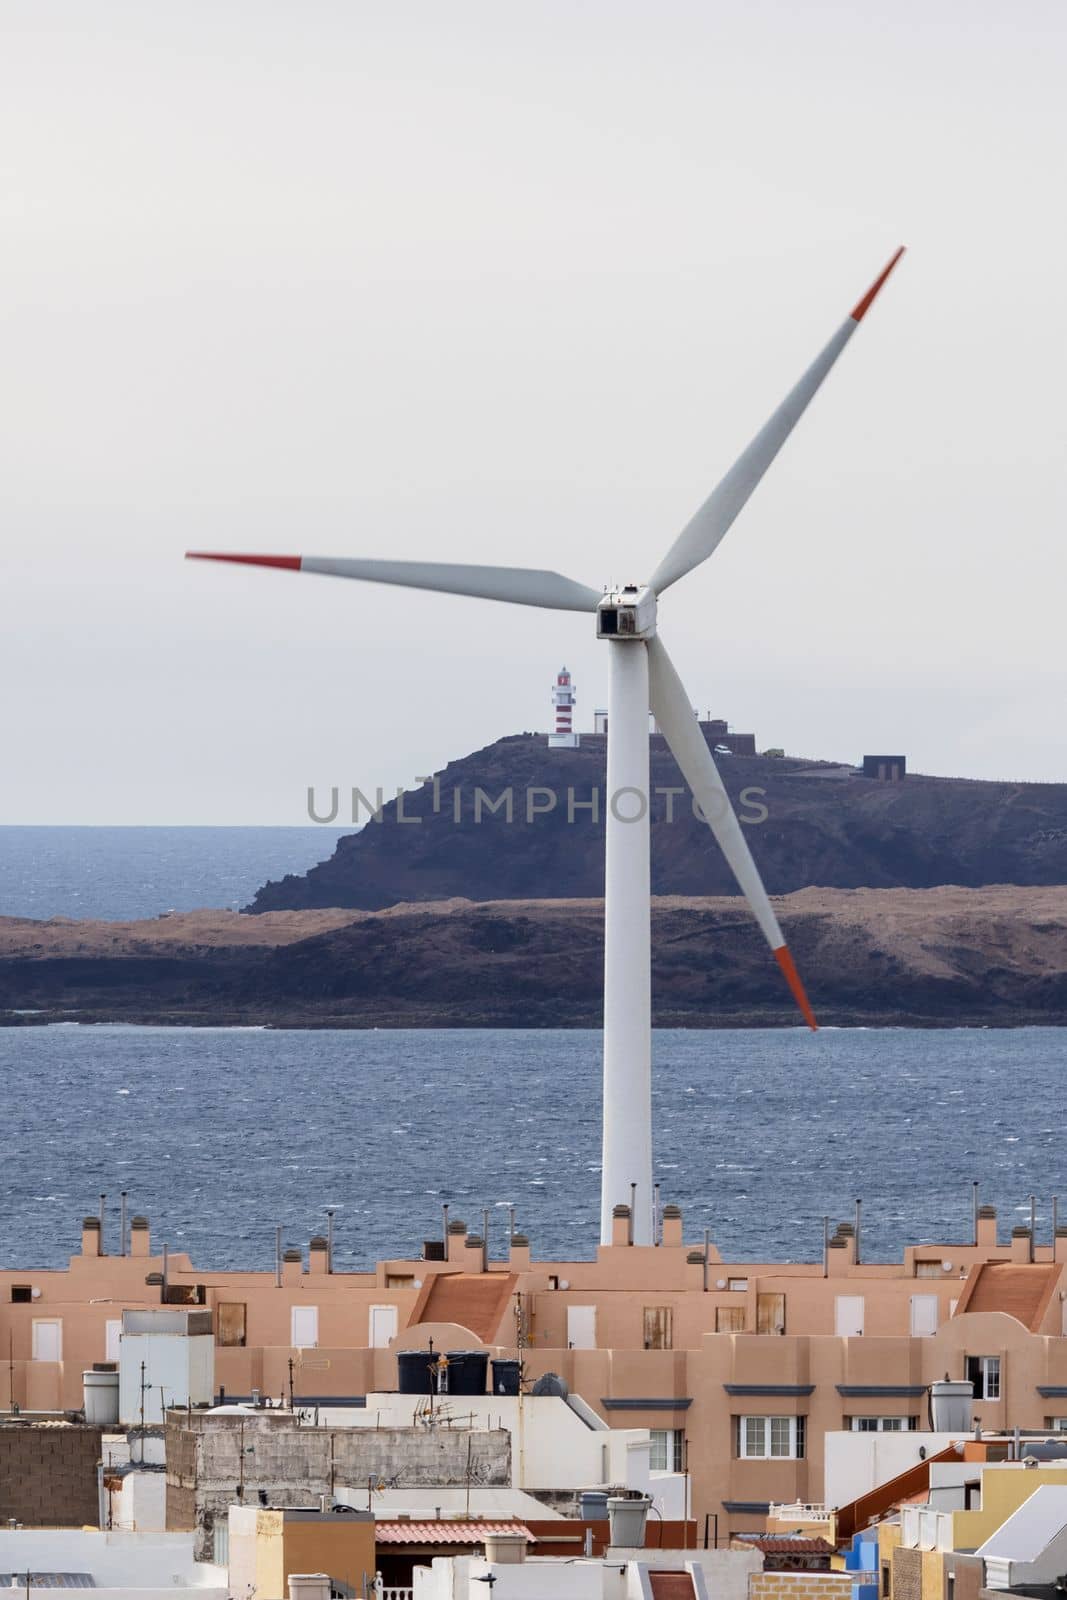 Wind turbine in town near sea by gcm